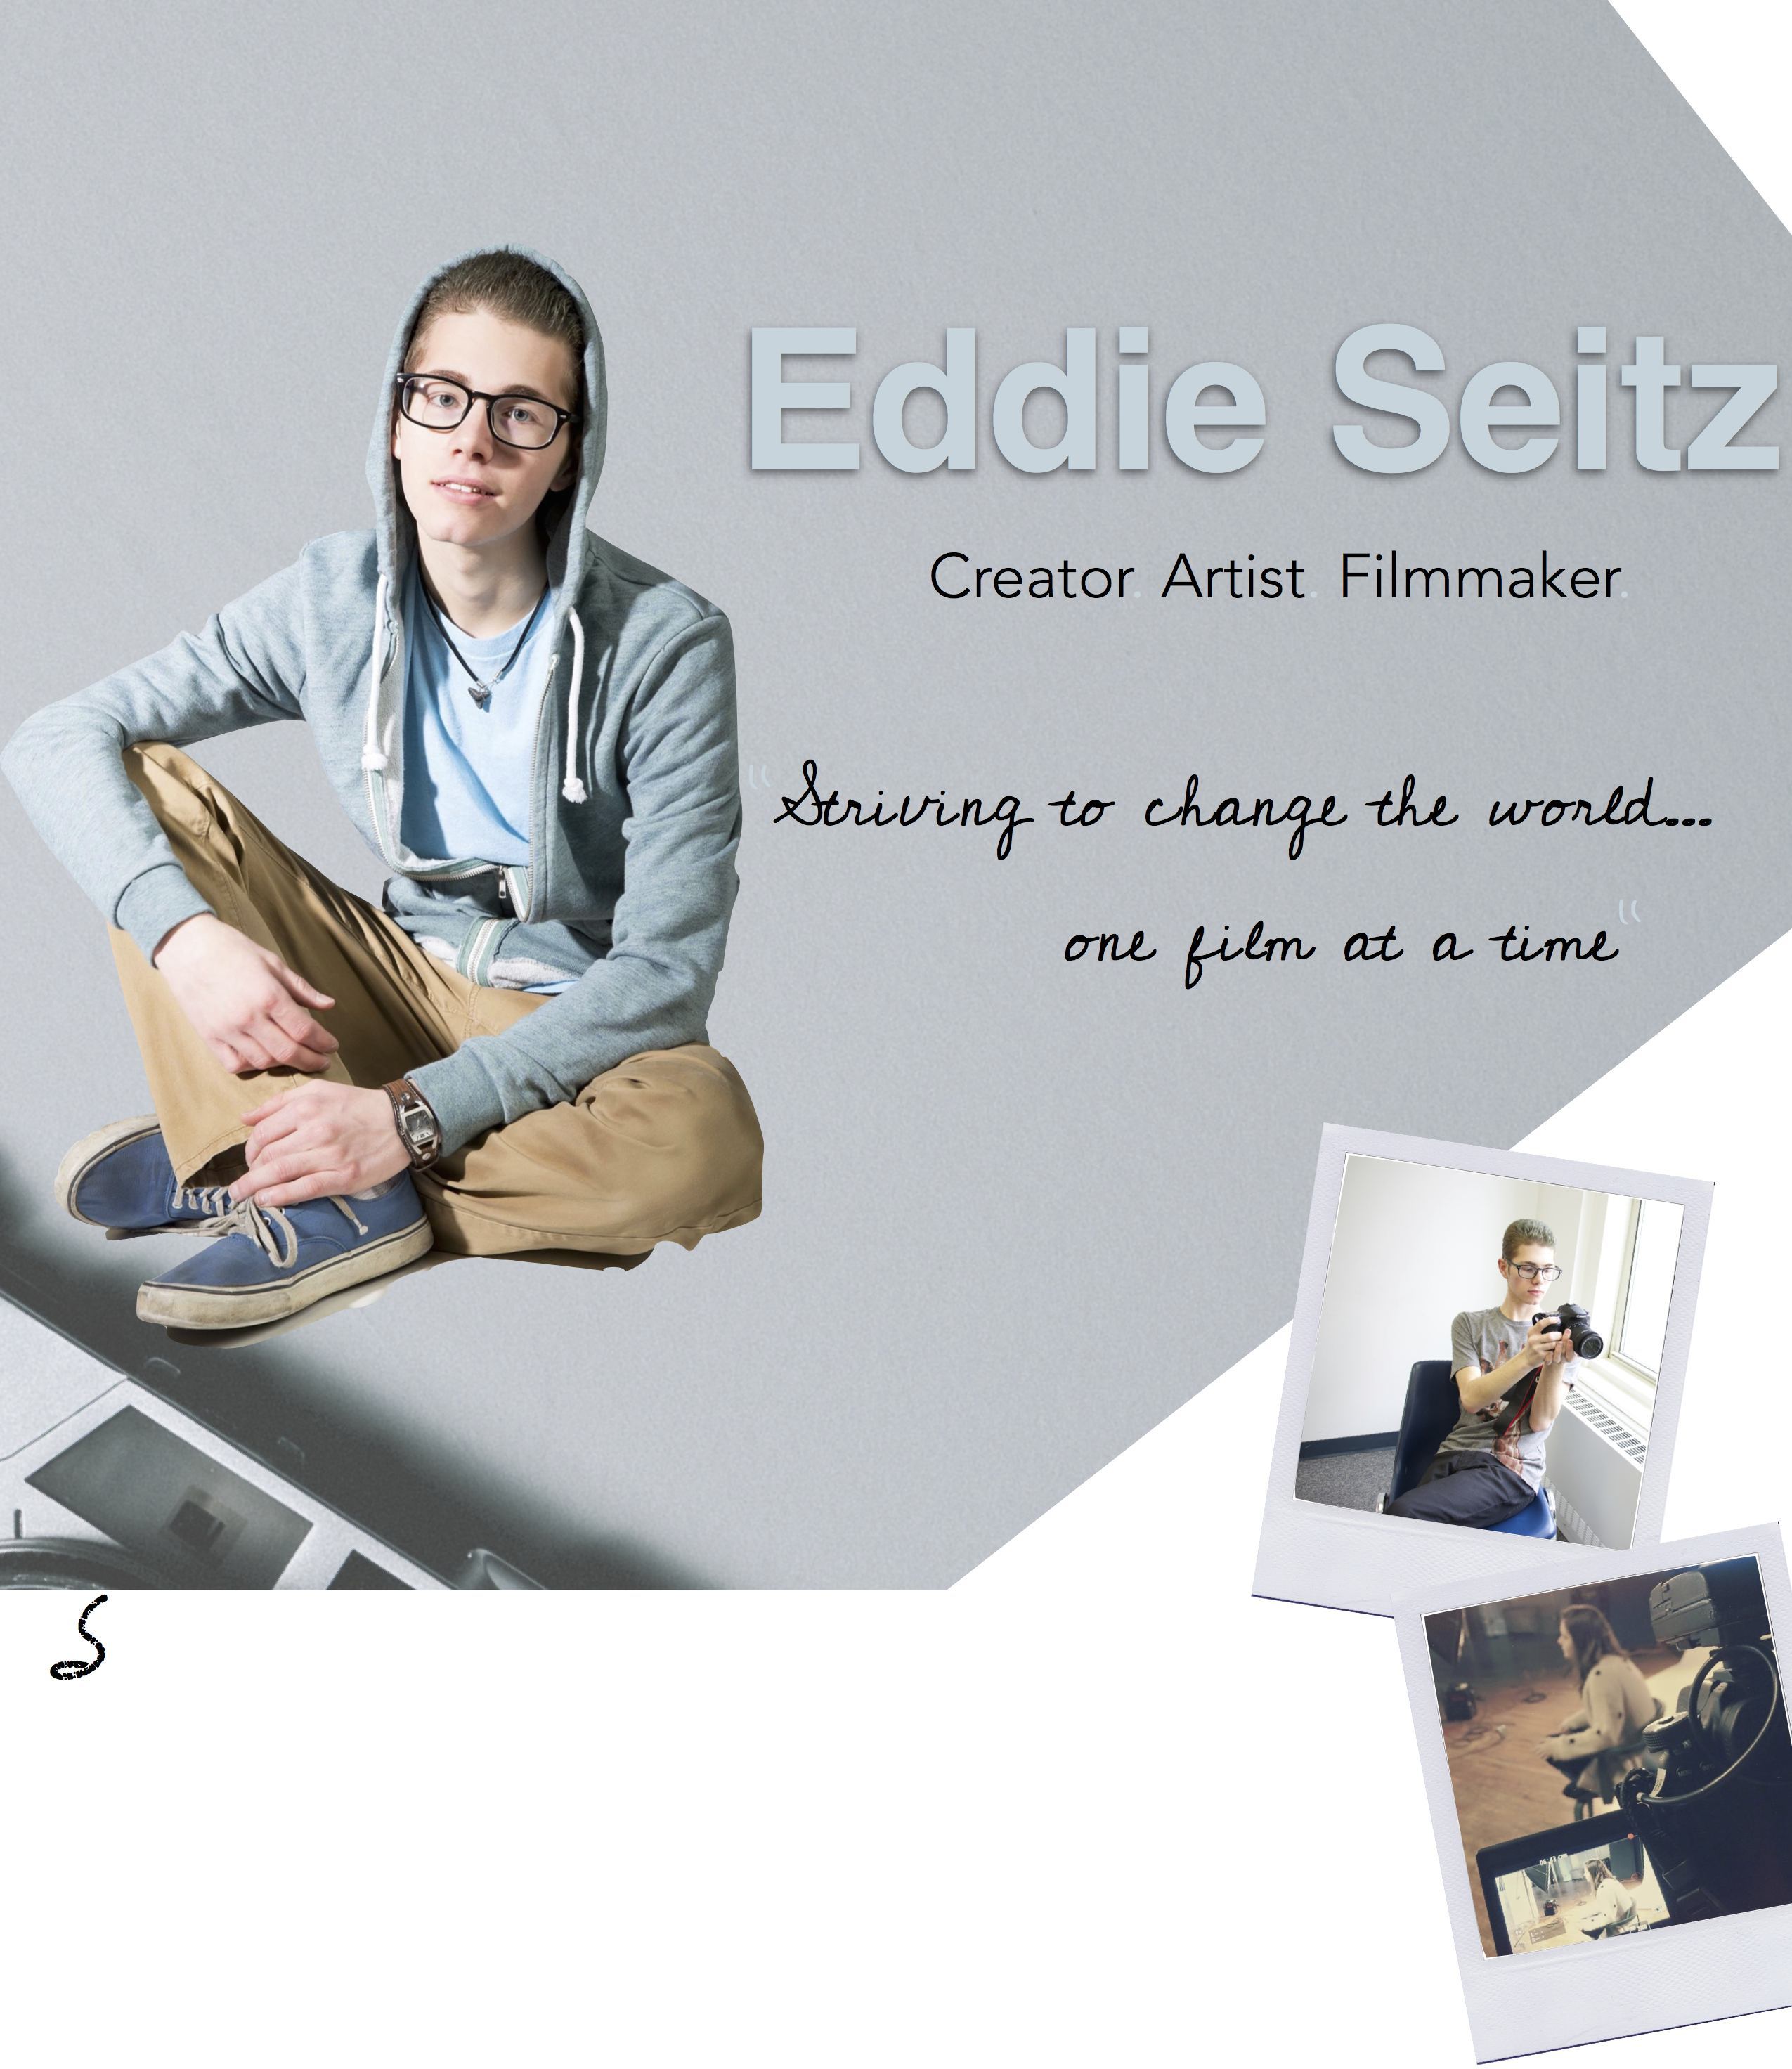 eddie seitz filmmaker